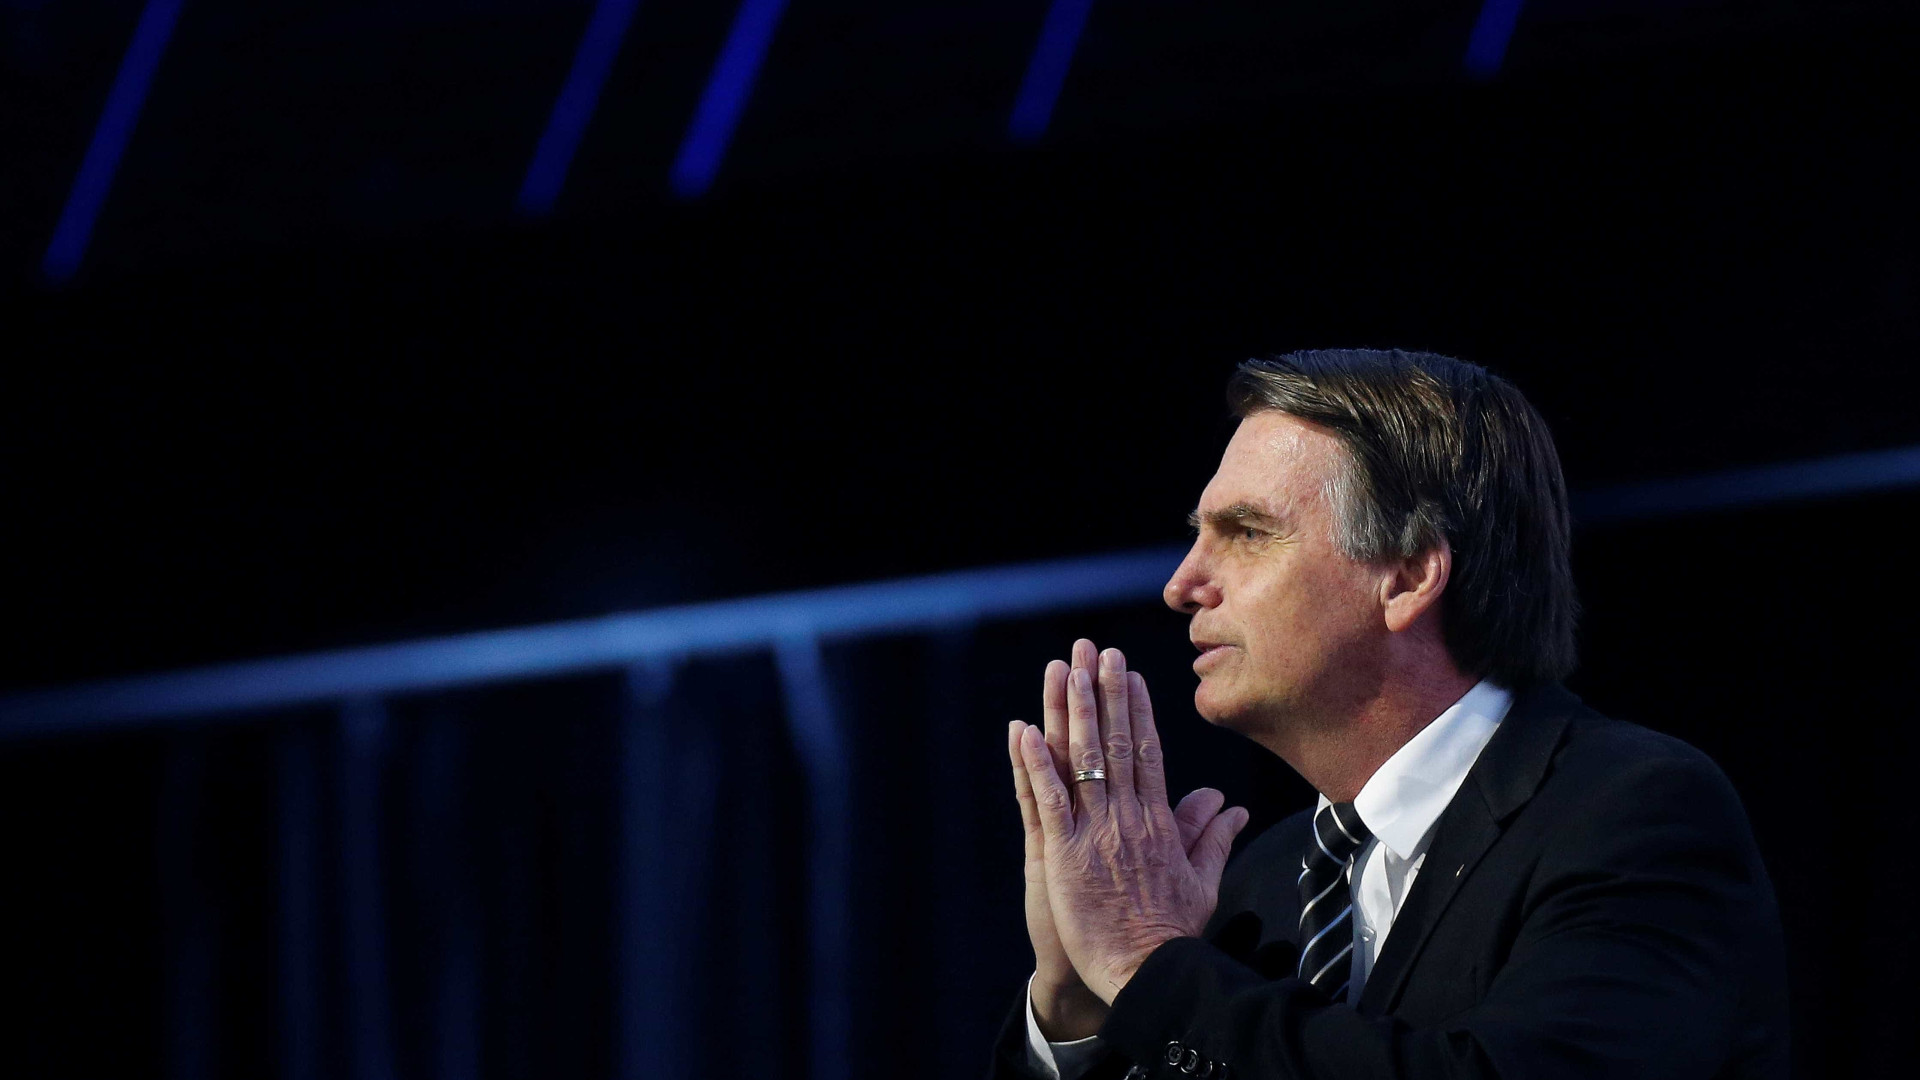 'A imprensa tenta me tornar criminoso', diz Bolsonaro sobre assessora